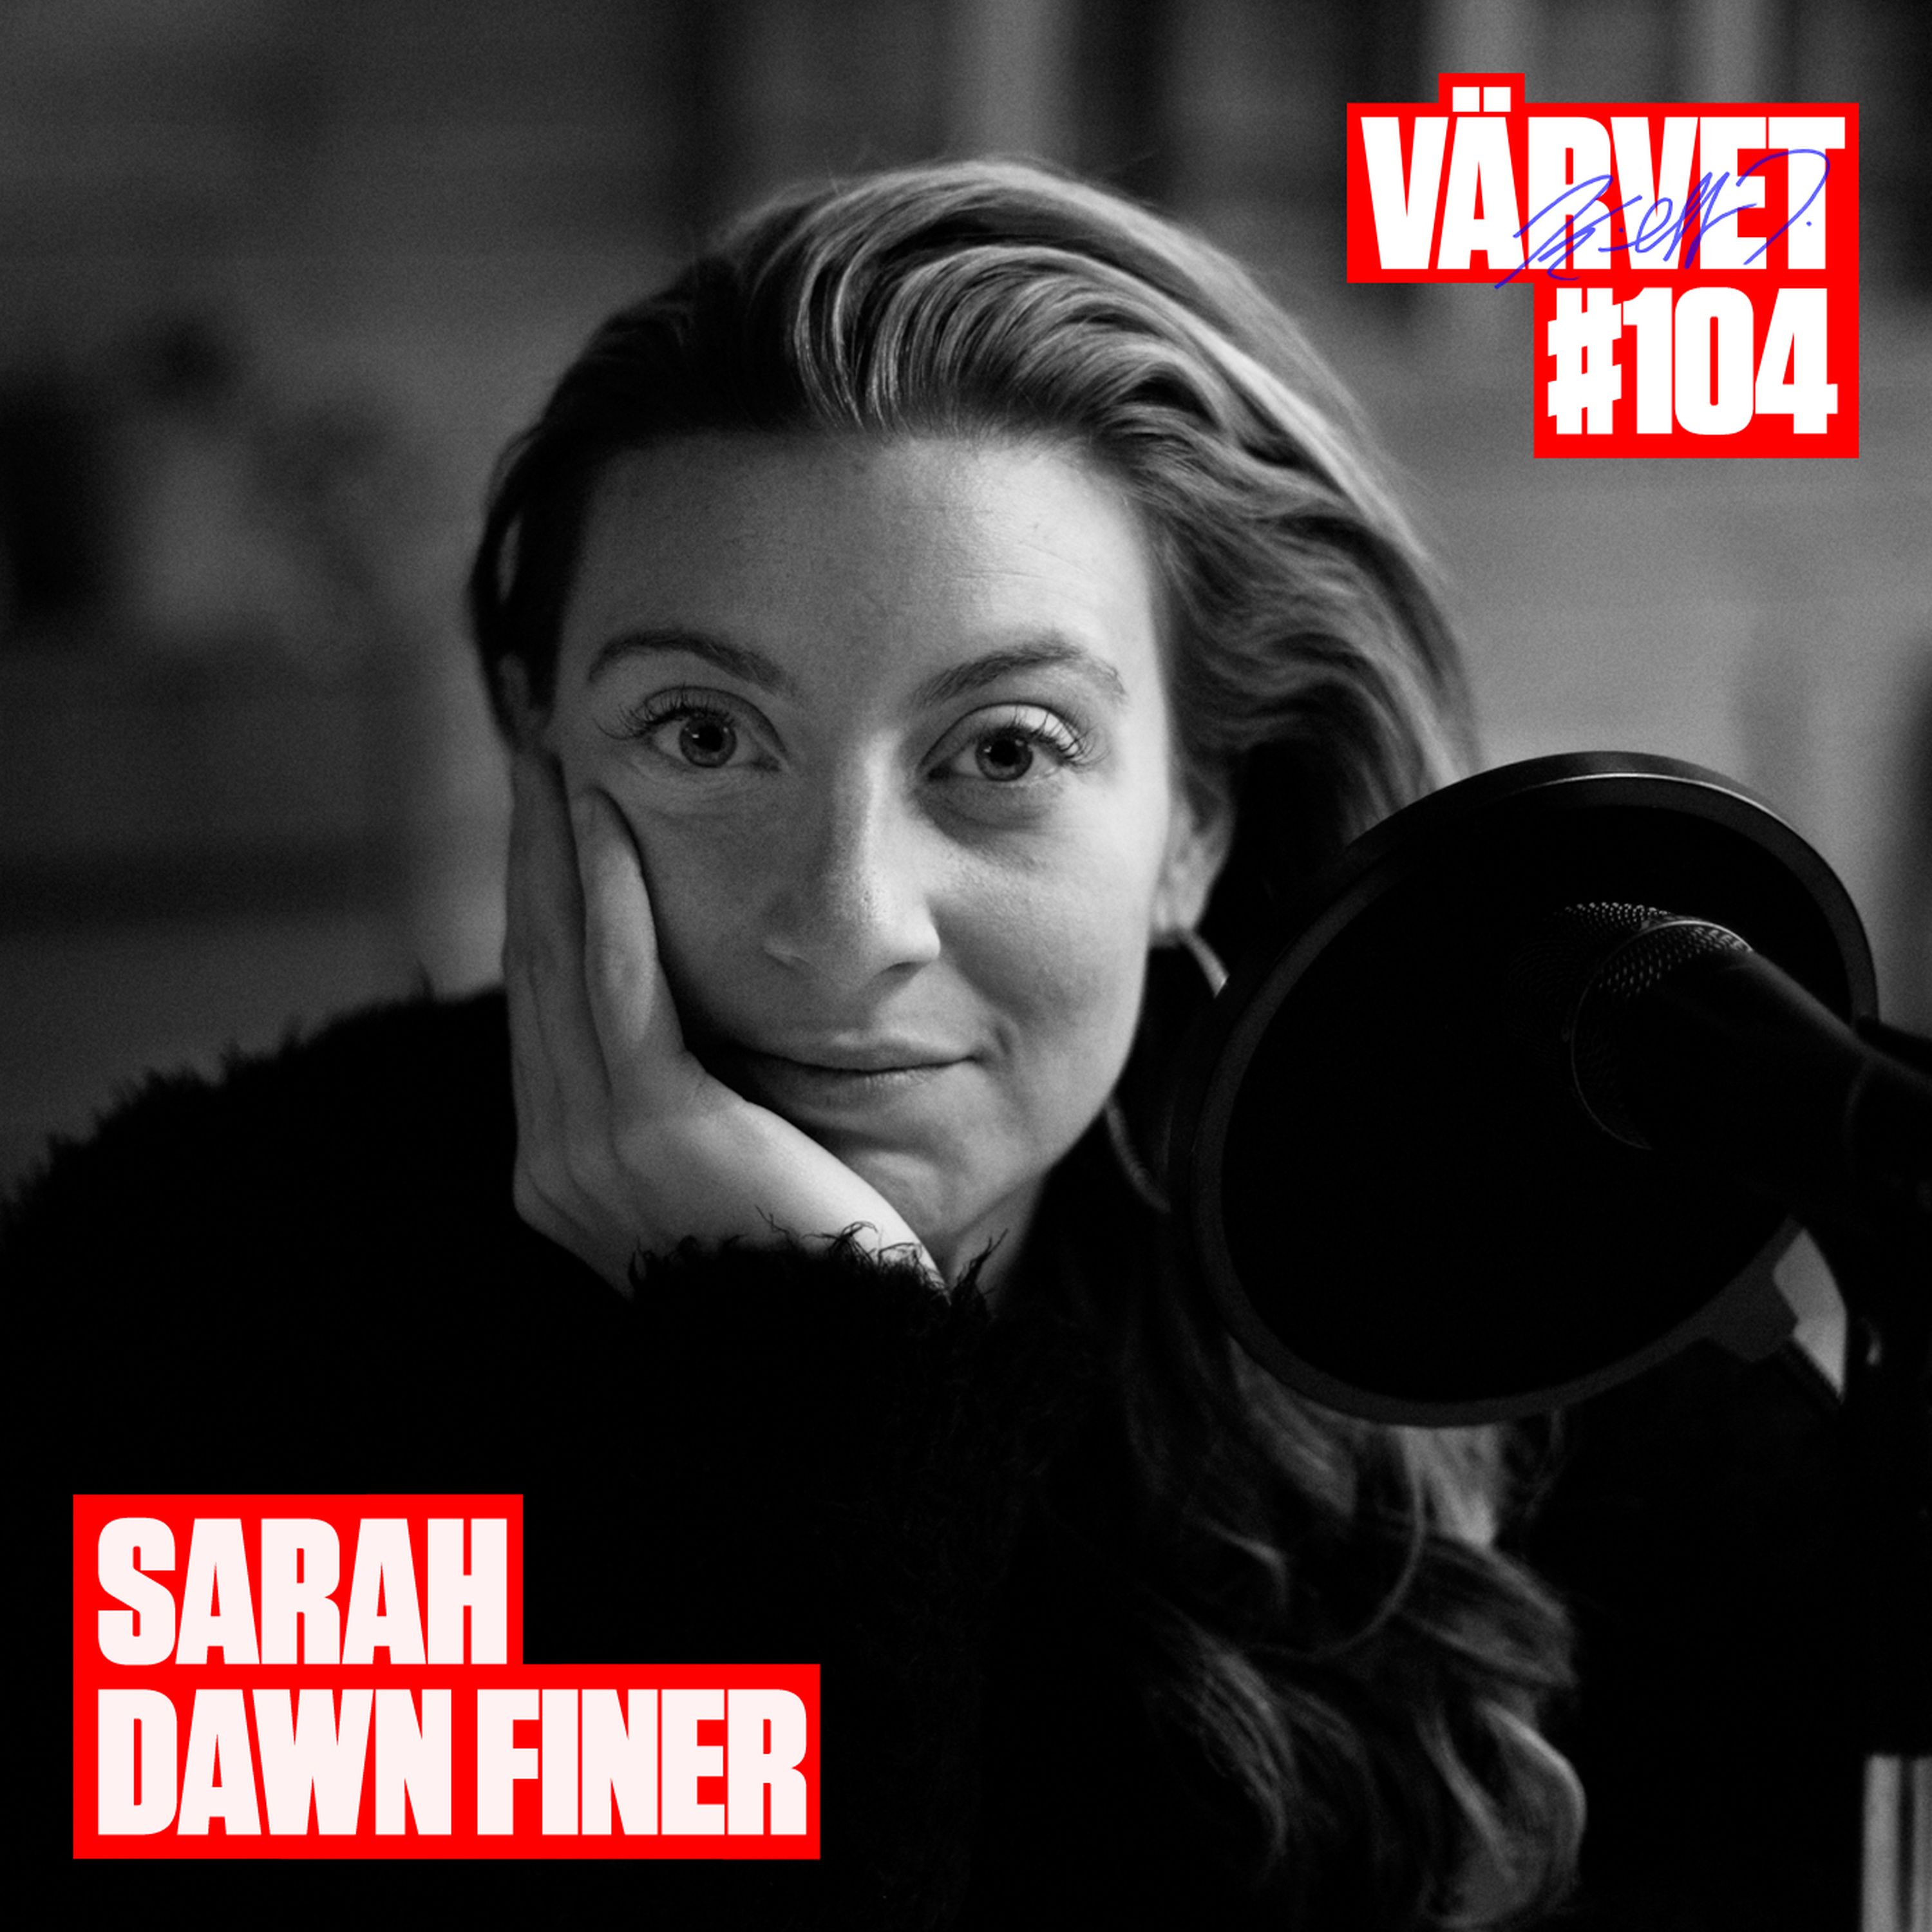 #104: Sarah Dawn Finer